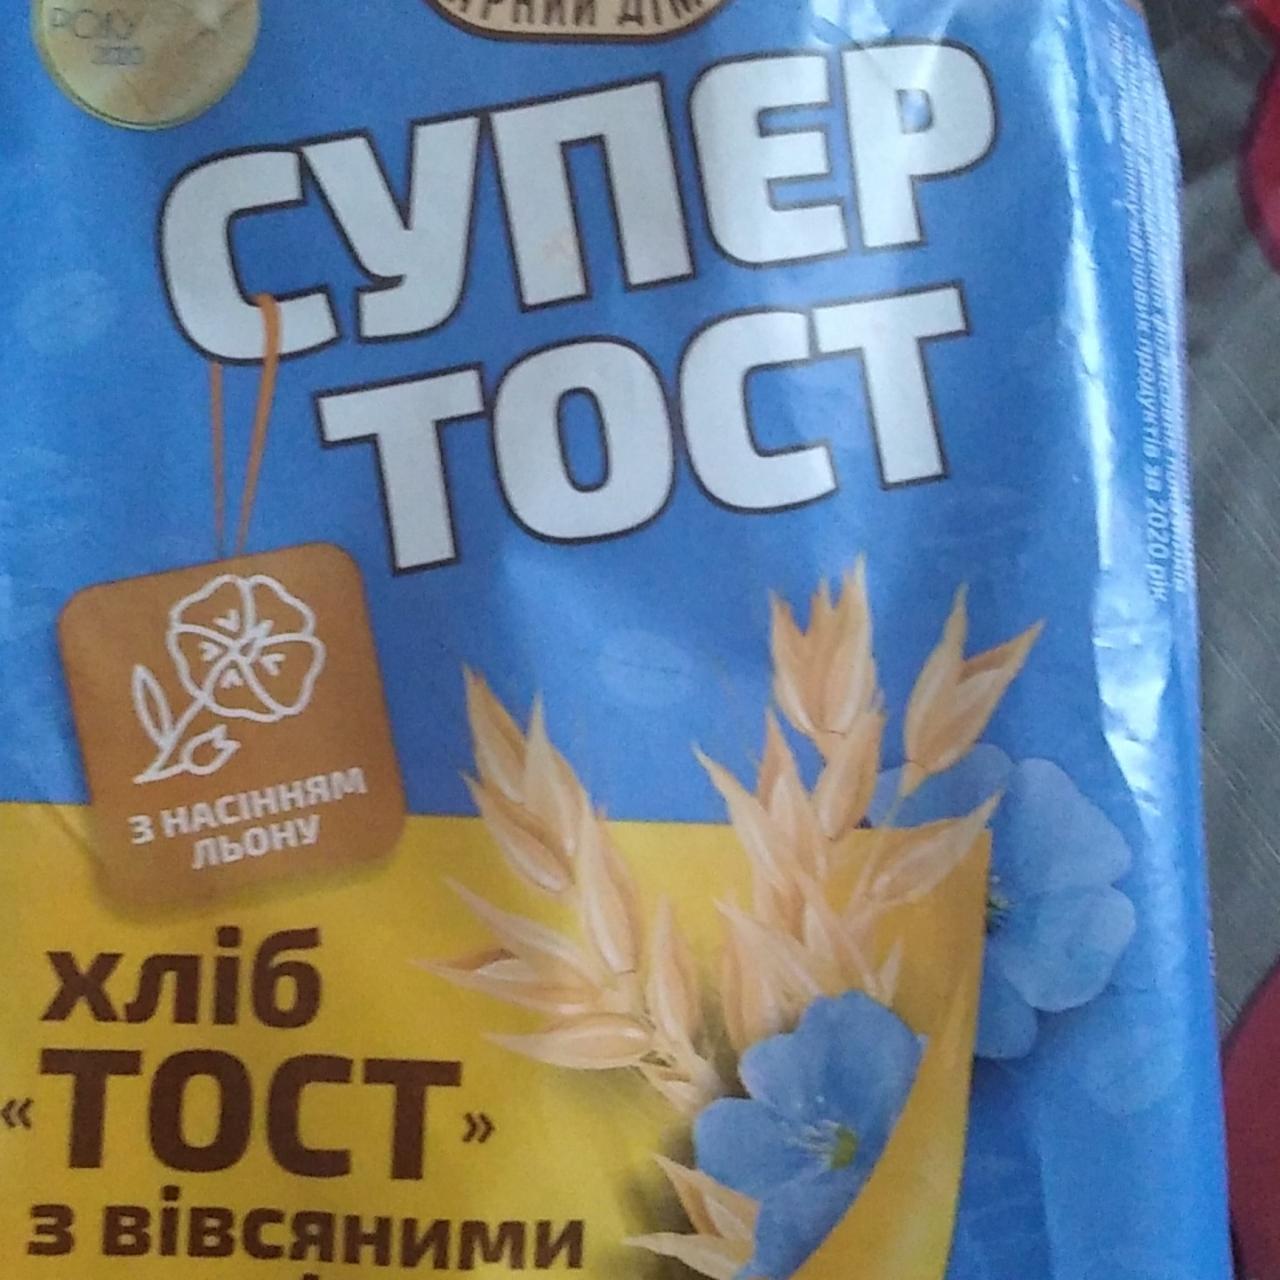 Фото - Хліб нарізний з вівсяними пластівцями та насінням льону Супер Тост Київхліб